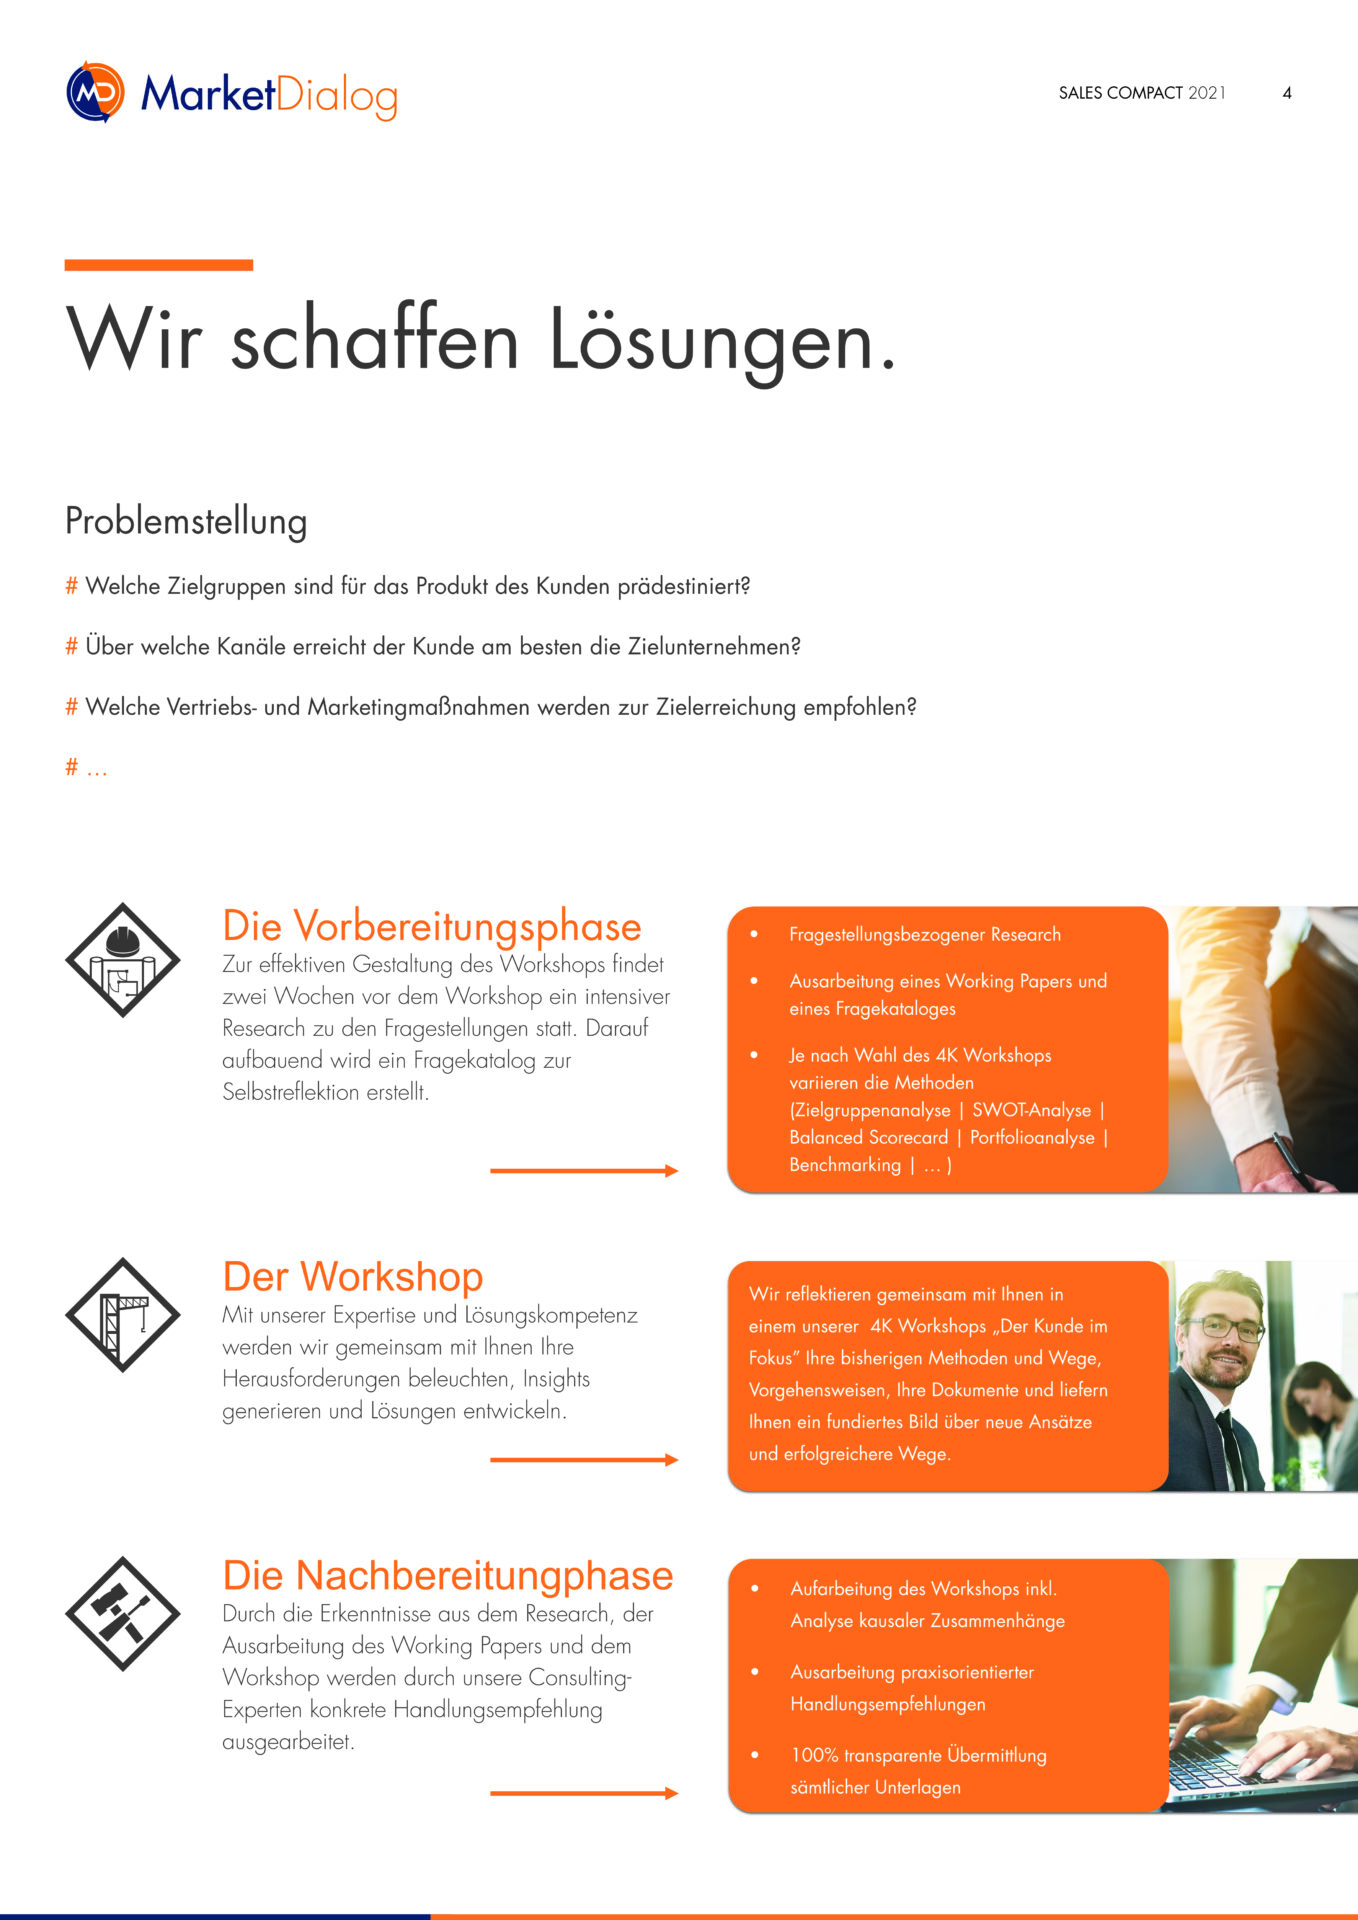 4K_Workshop_Der_Kunde_im_Fokus_MarketDialog_Website_Info_Paper_V